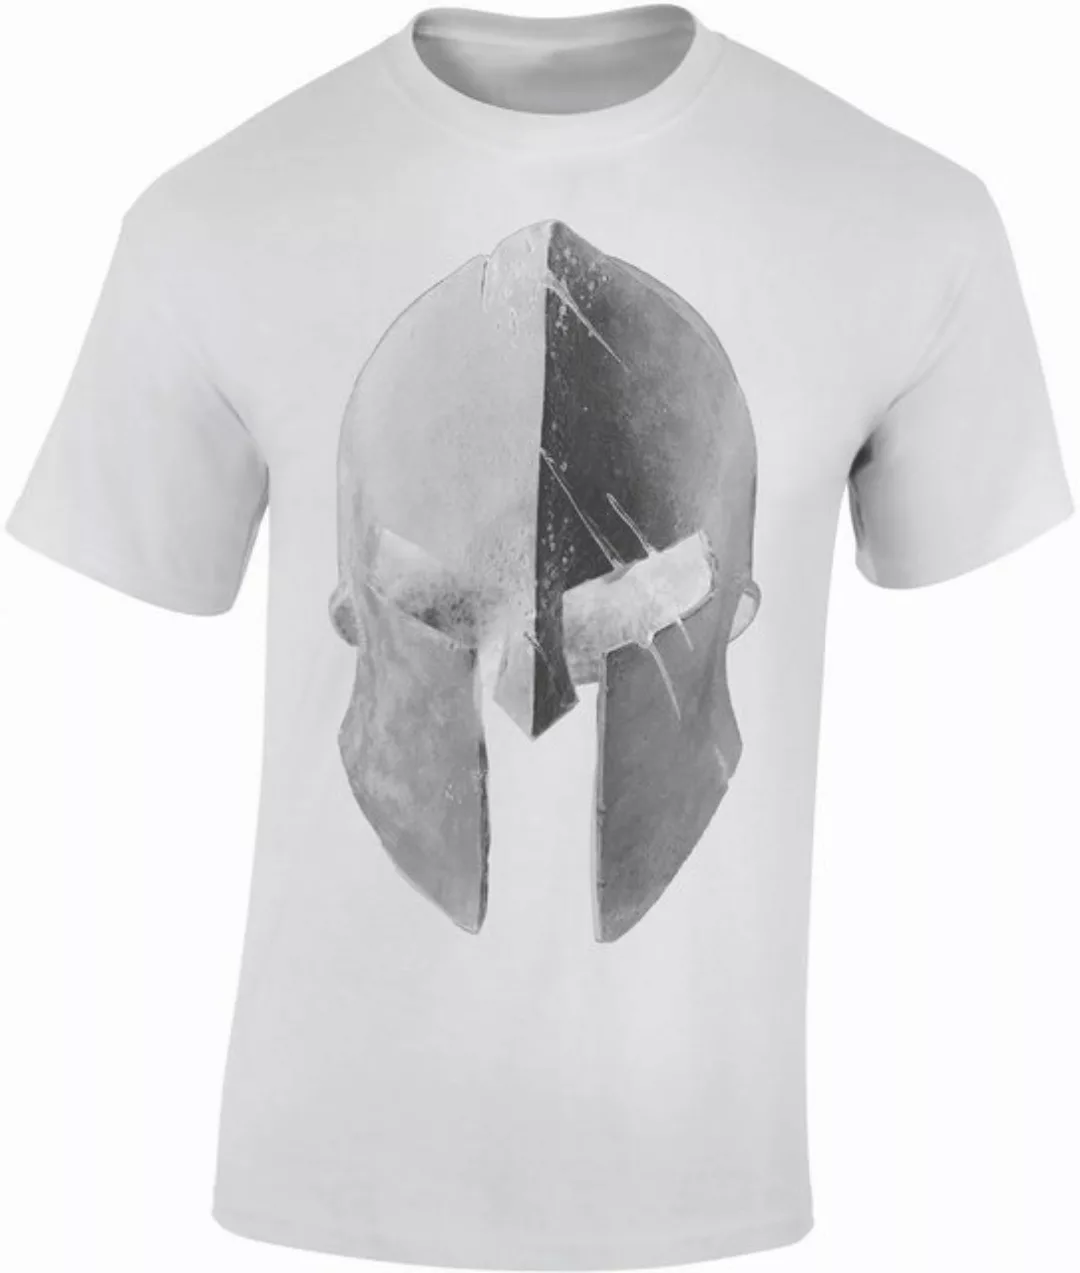 Baddery Print-Shirt Sparta T-Shirt : "Sparta Helm", hochwertiger Siebdruck, günstig online kaufen